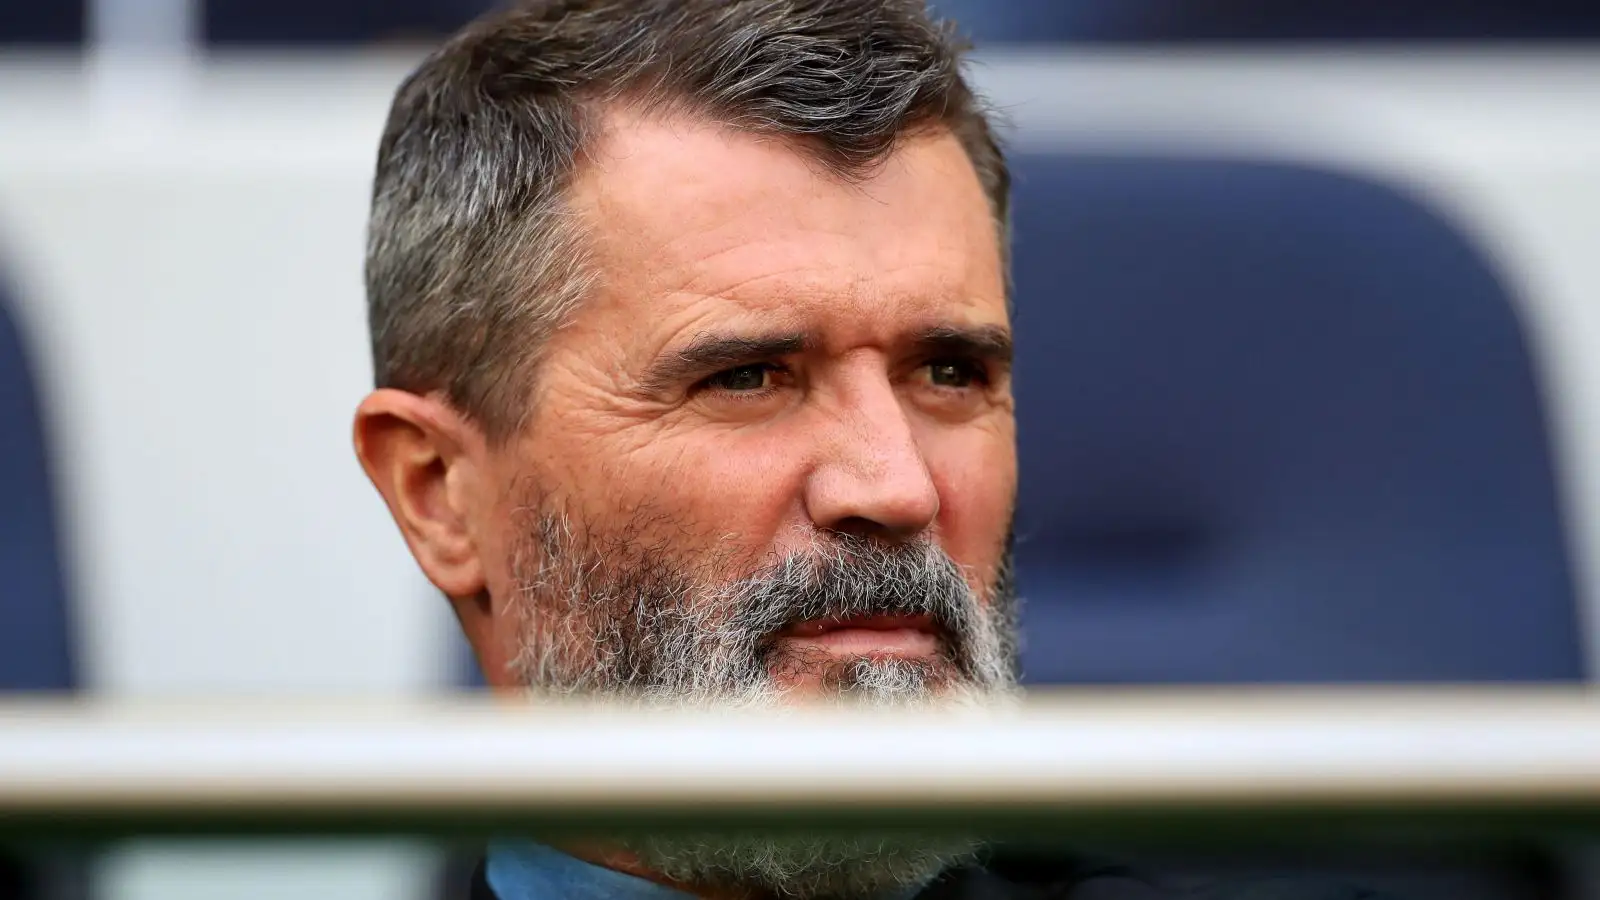 Roy Keane speaks about Chelsea